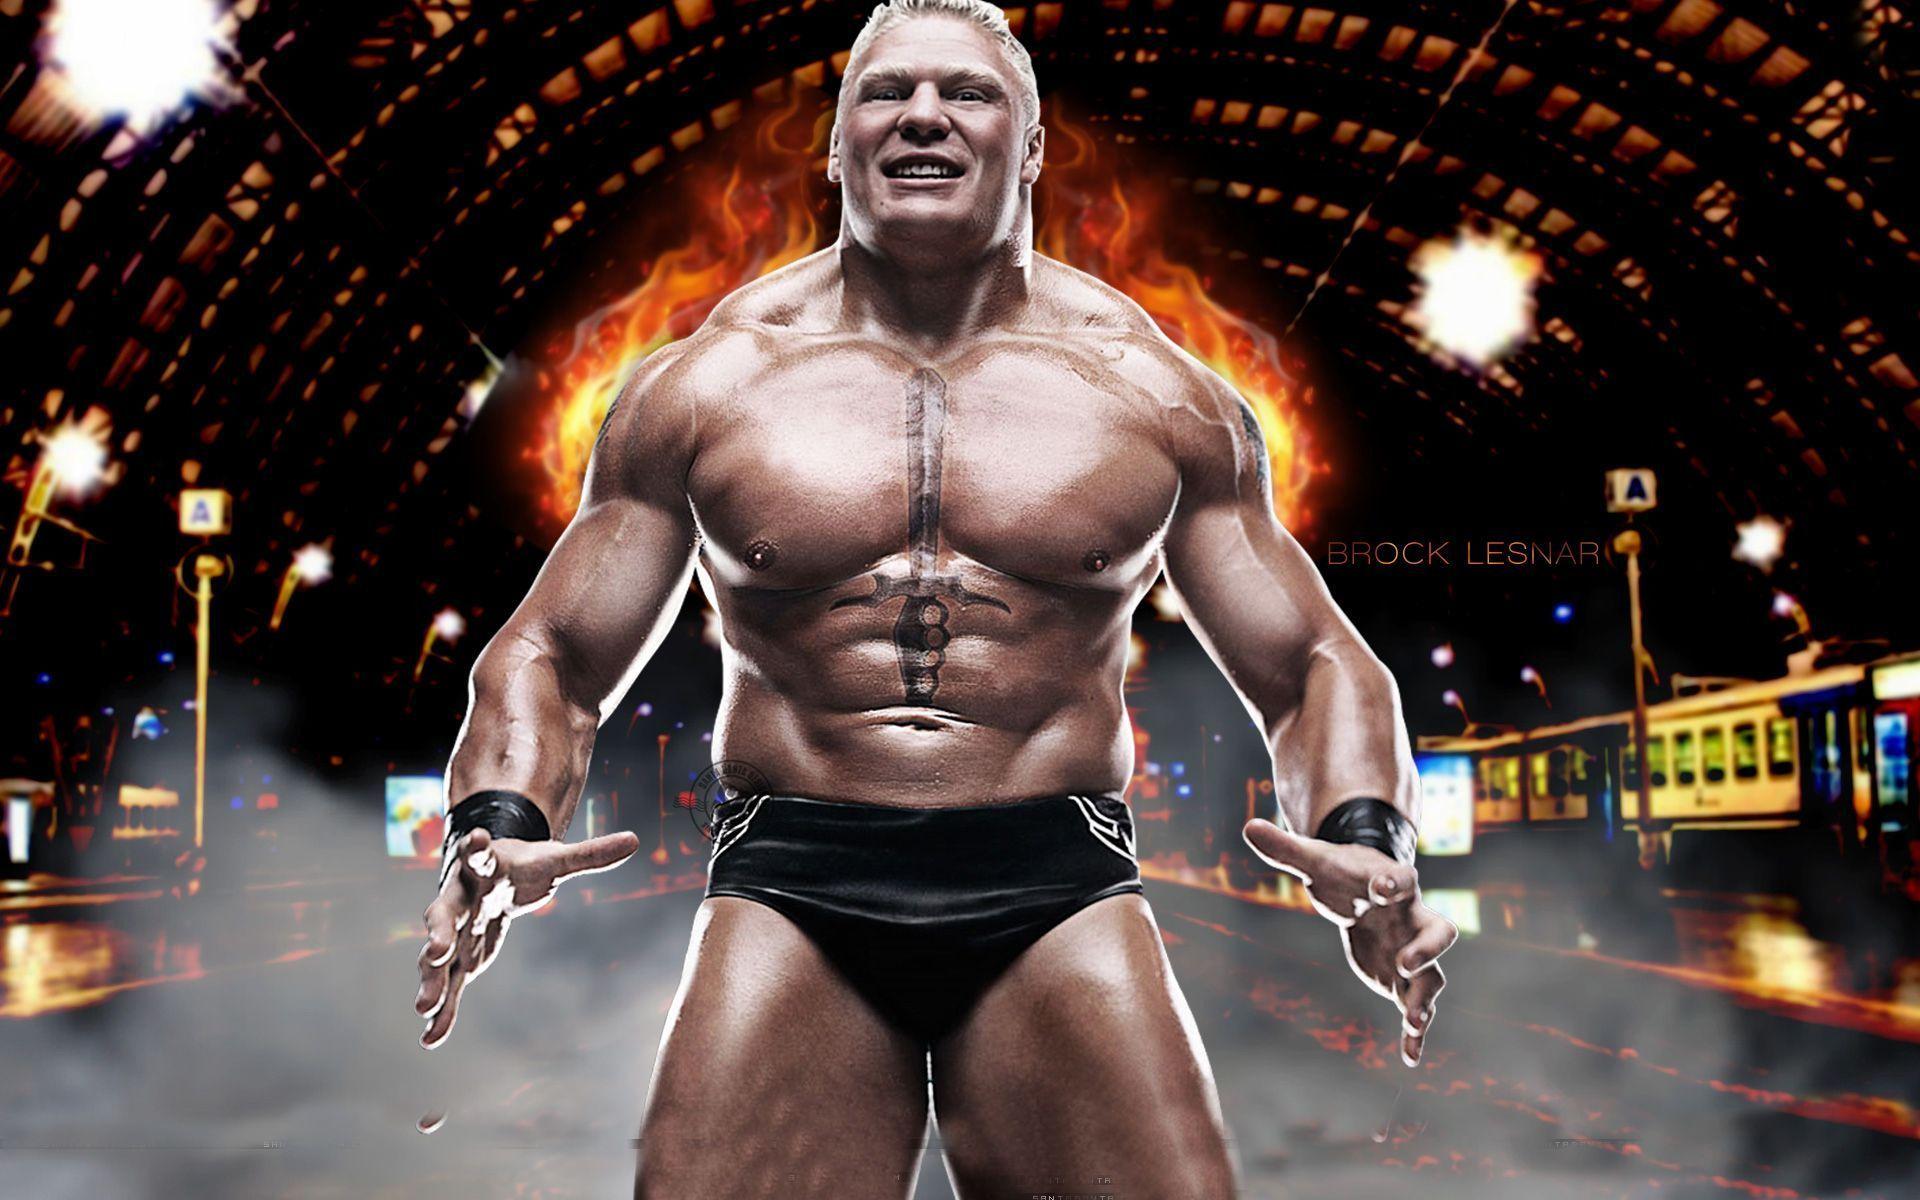 Brock Lesnar Hd Background 10. Brock Lesnar HD Background